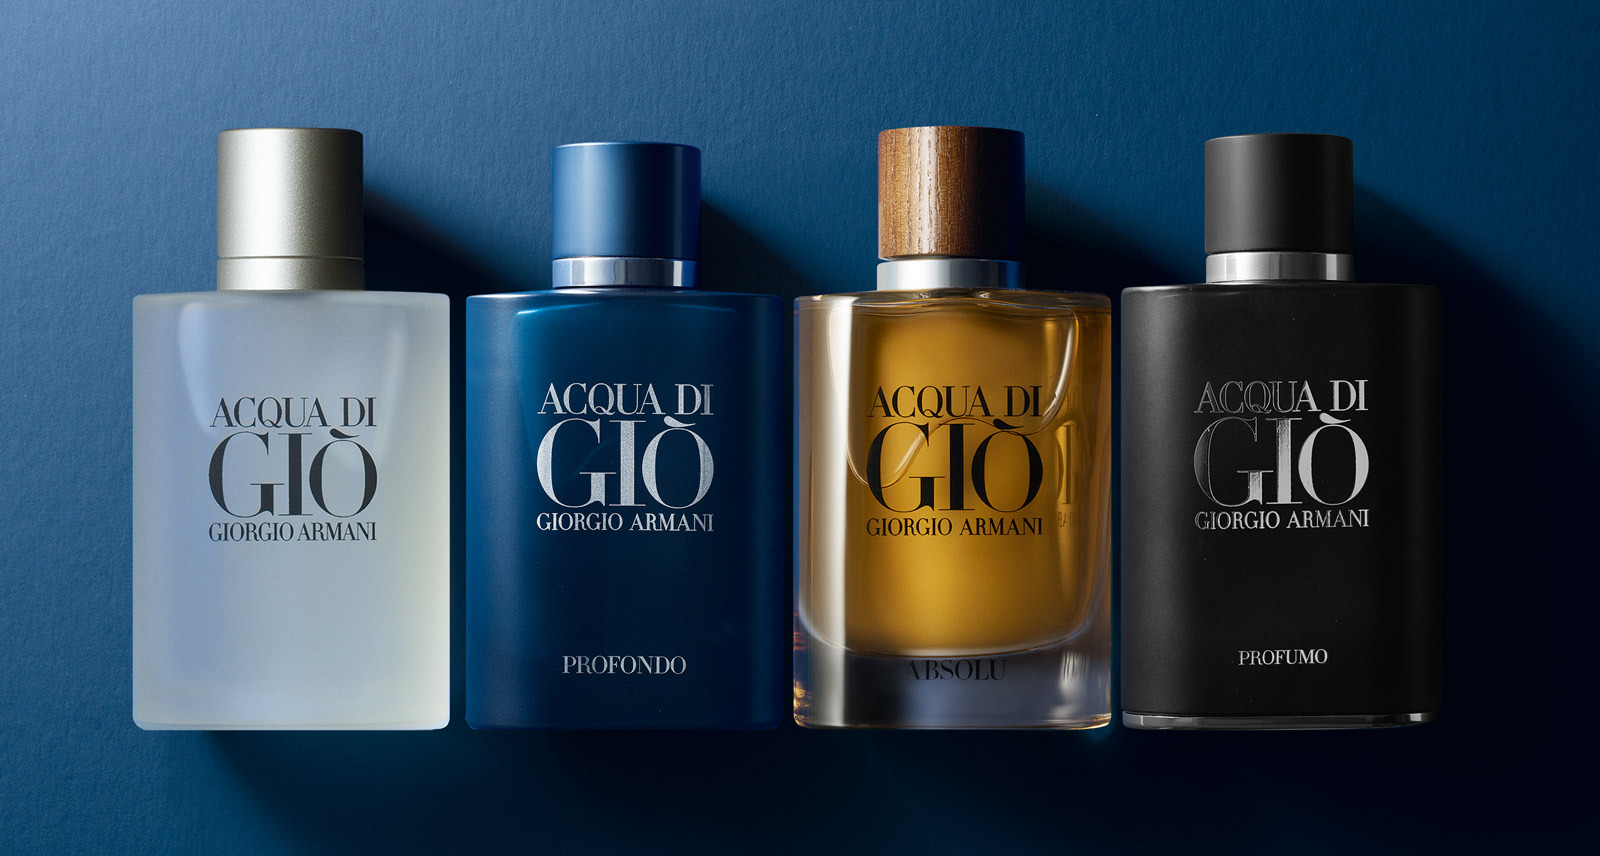 Armani's Acqua Di Gio fragrances